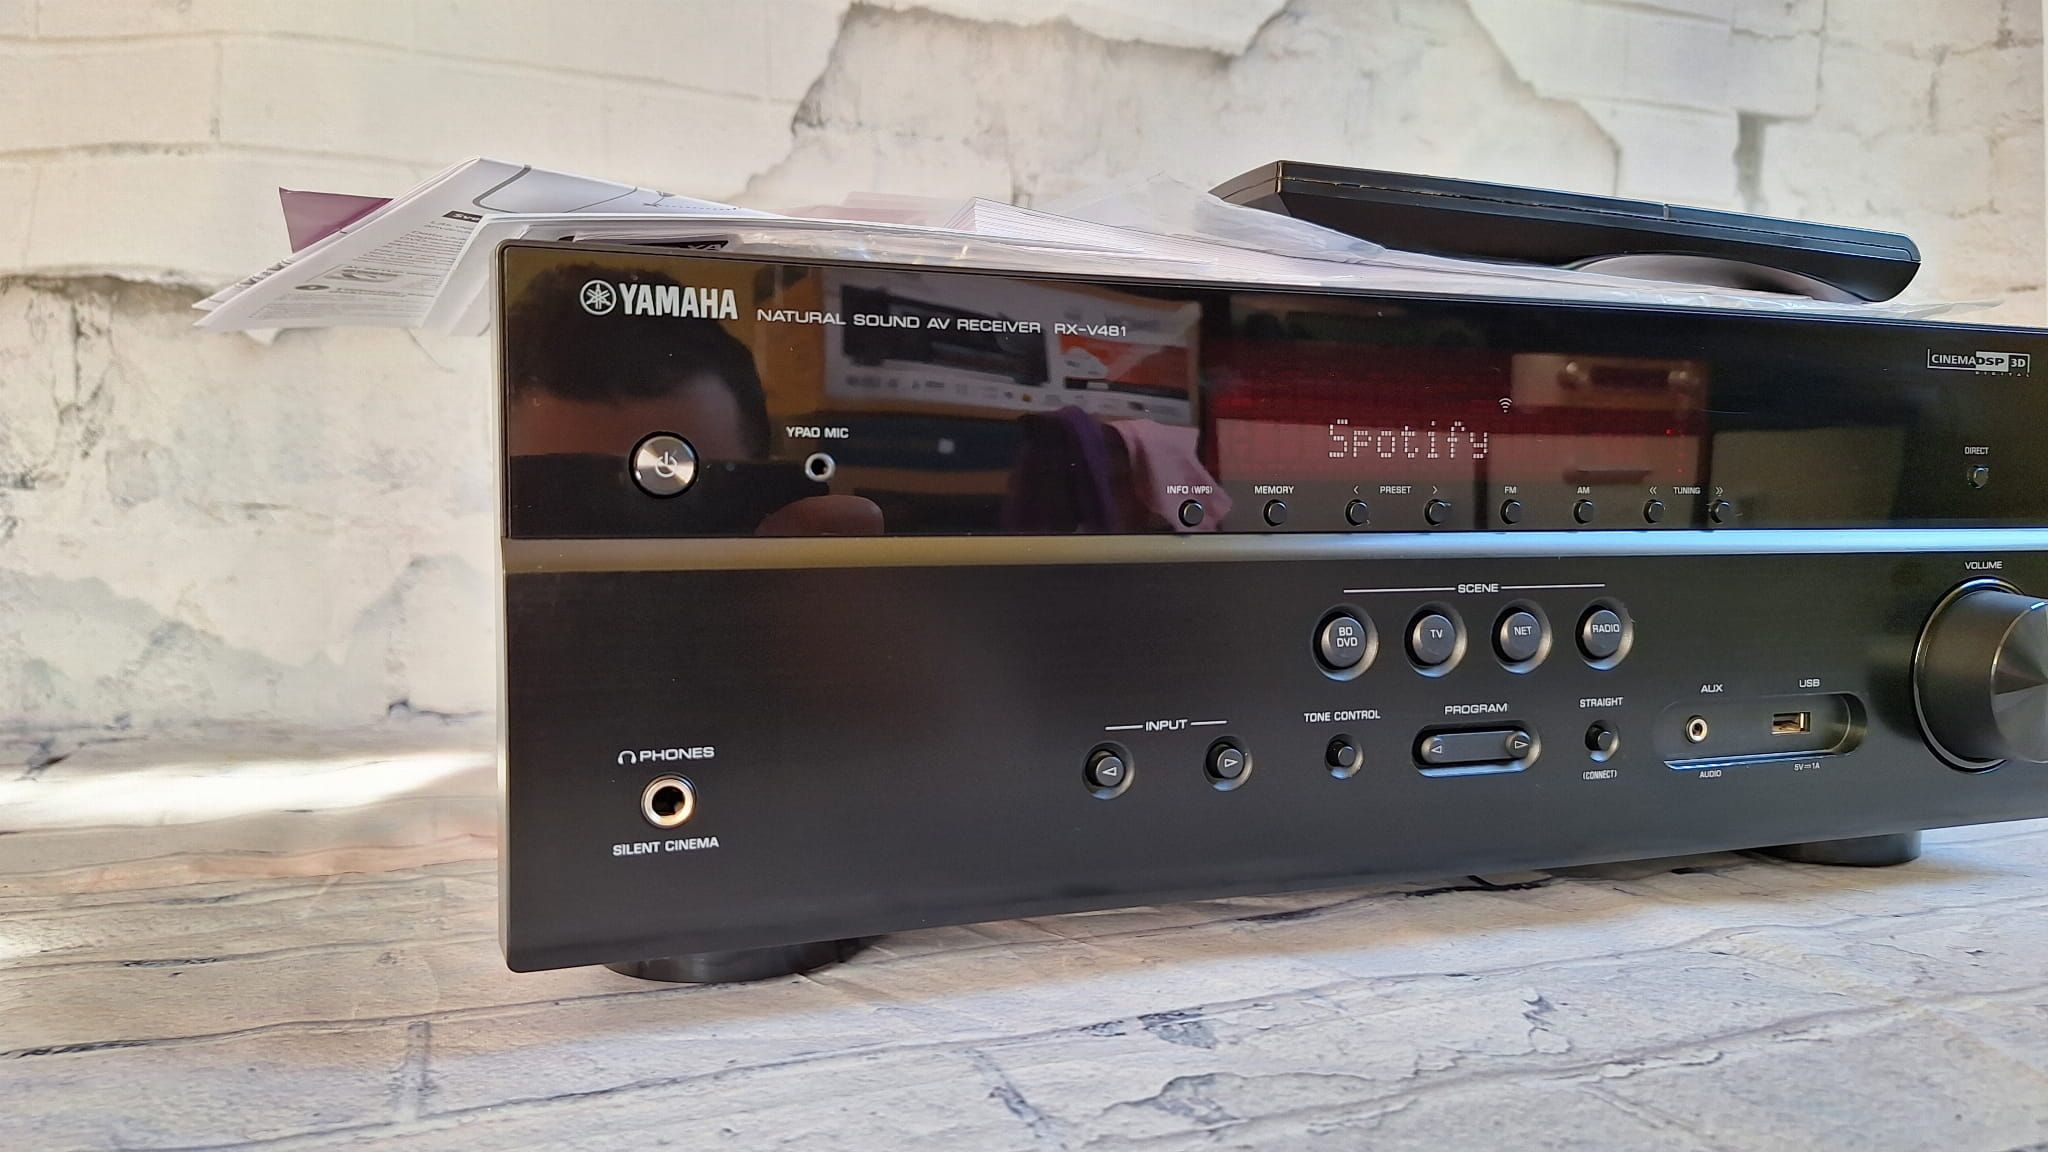 5.1 Yamaha RX-V481 Wi-fi BT Musiccast 4k60p HDR net radio spotify